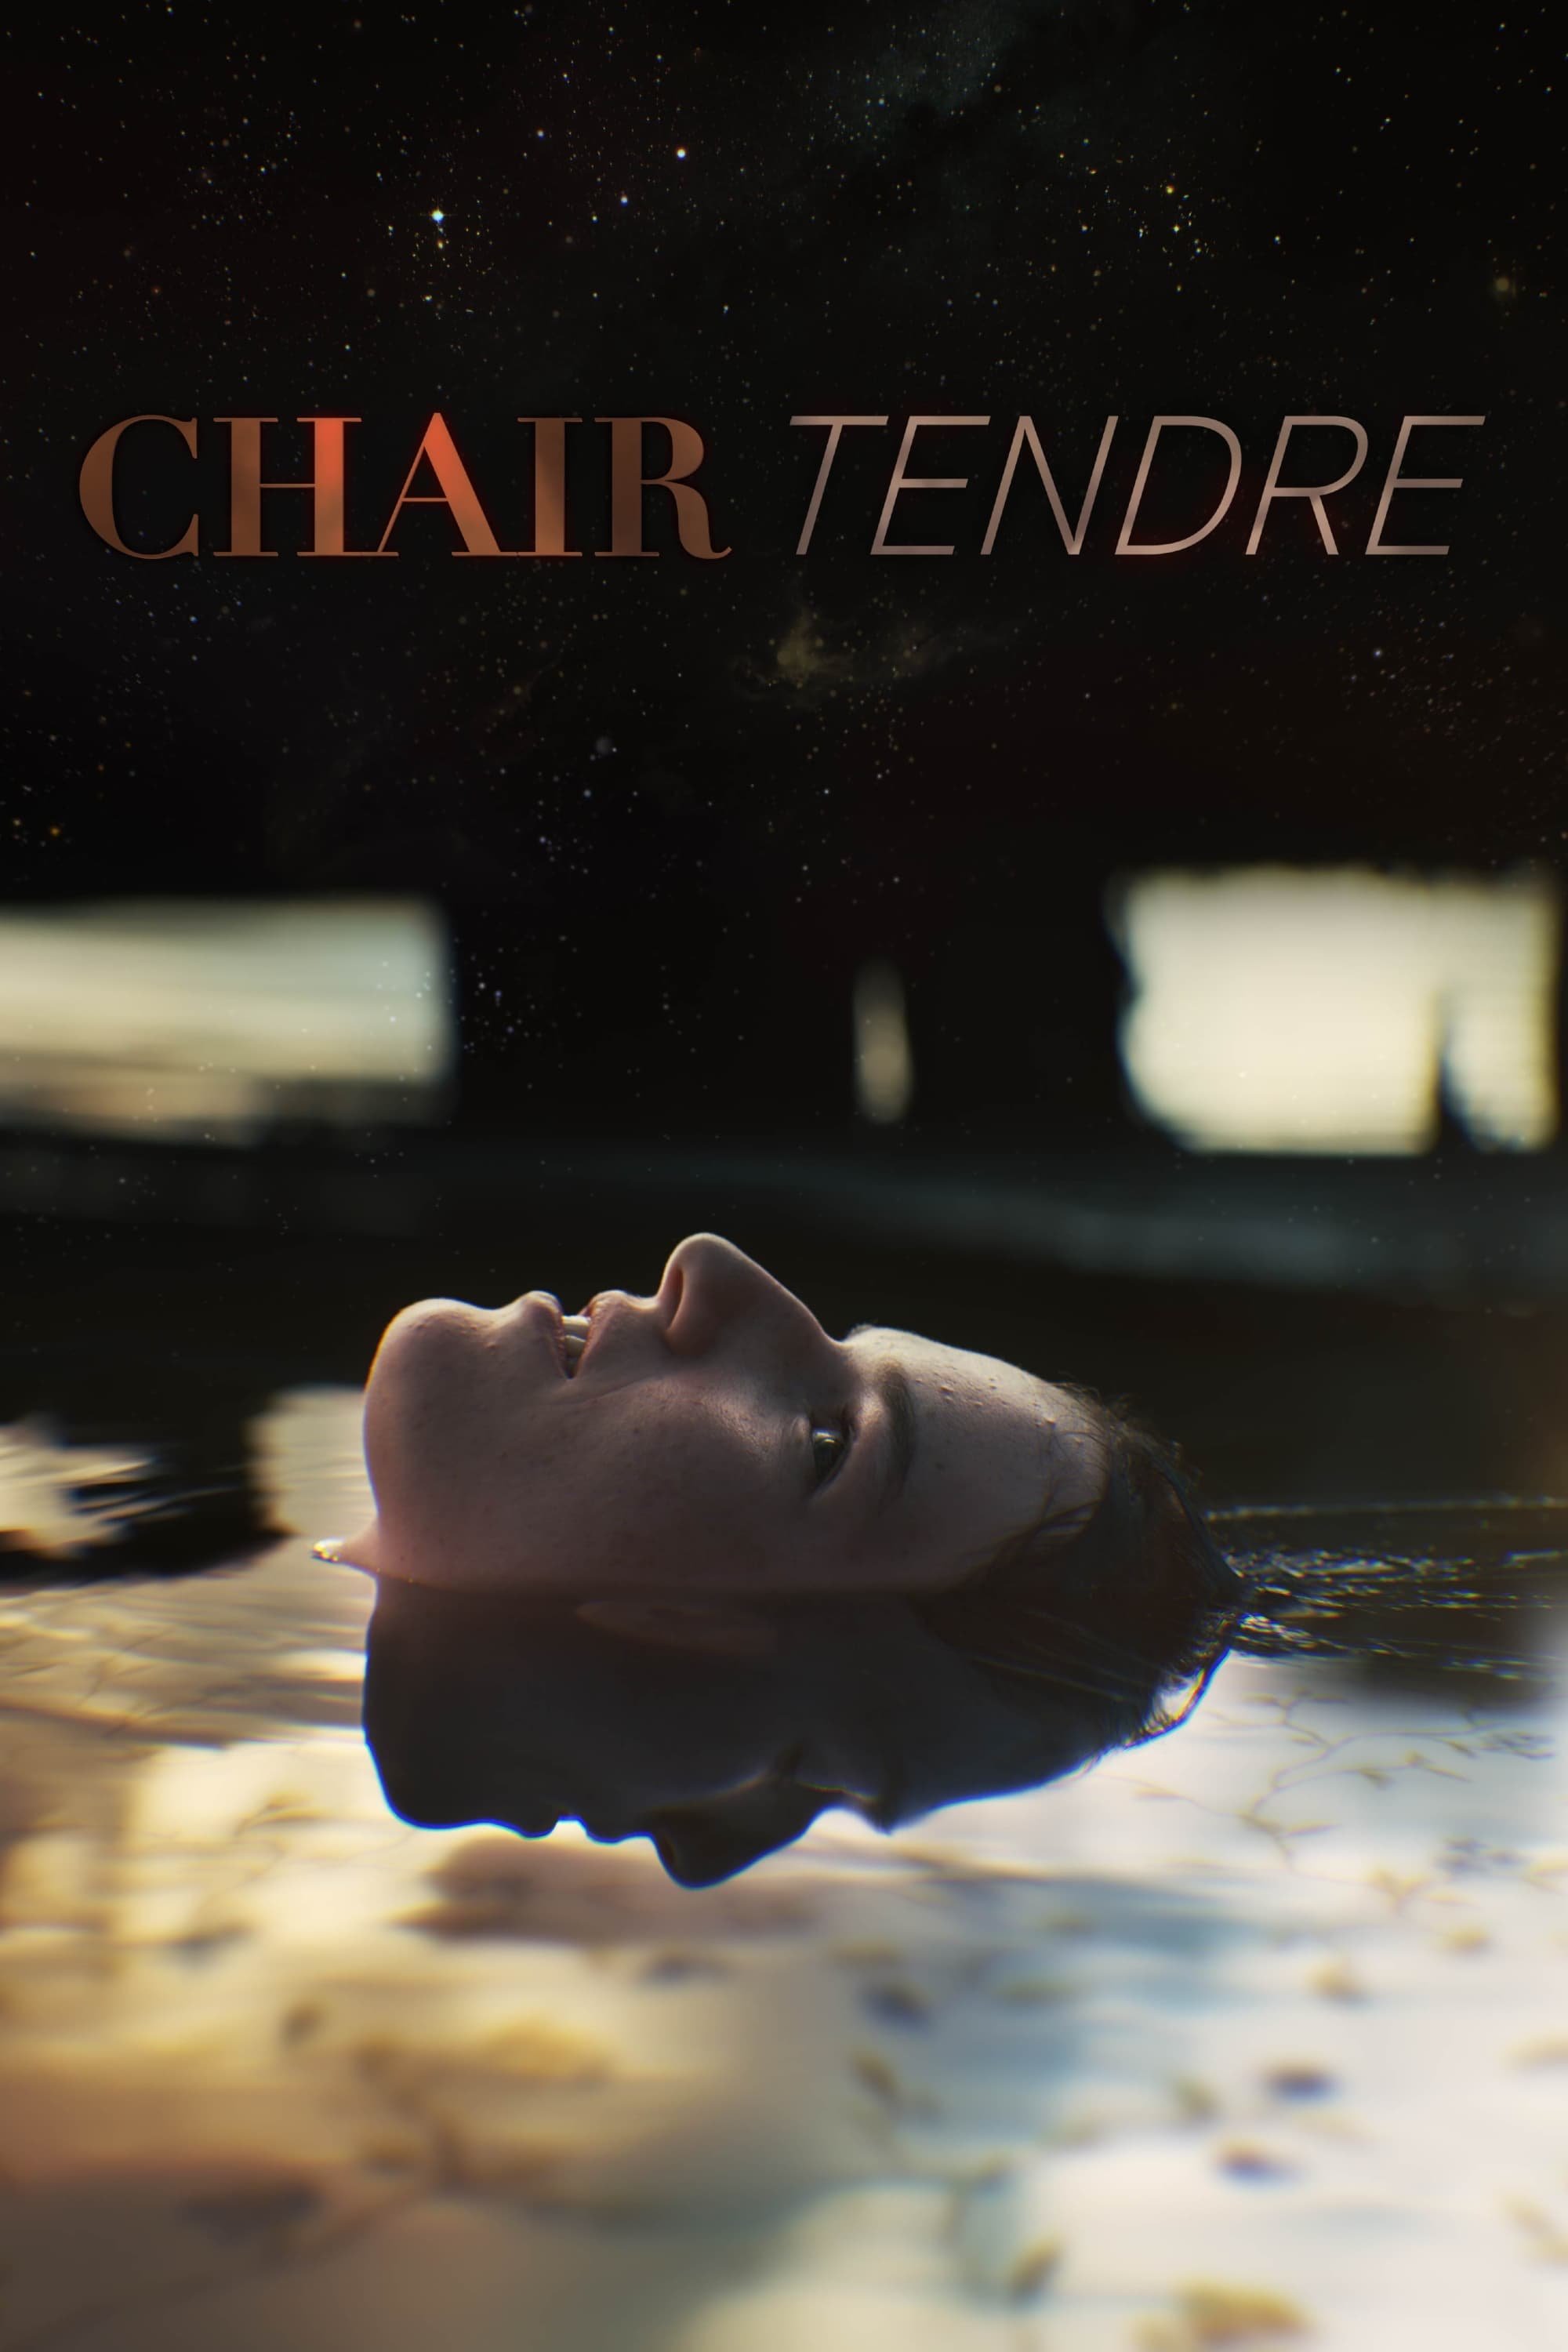 Chair tendre - Saison 1